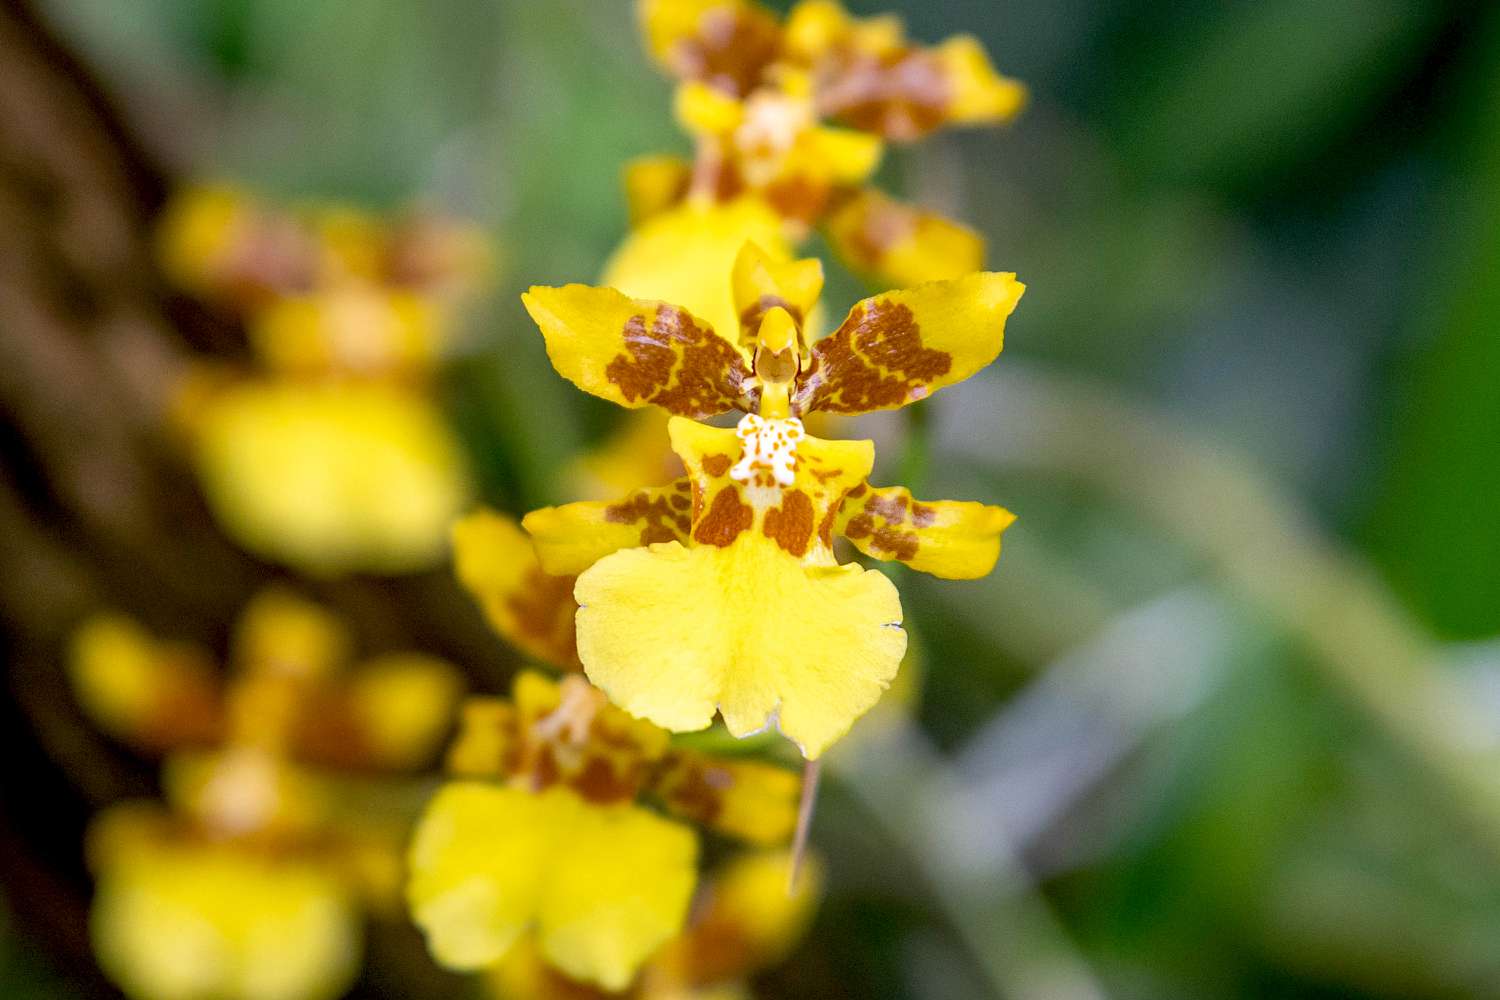 Psychopsis-Orchidee mit gelben und braunen Kelchblättern in Großaufnahme